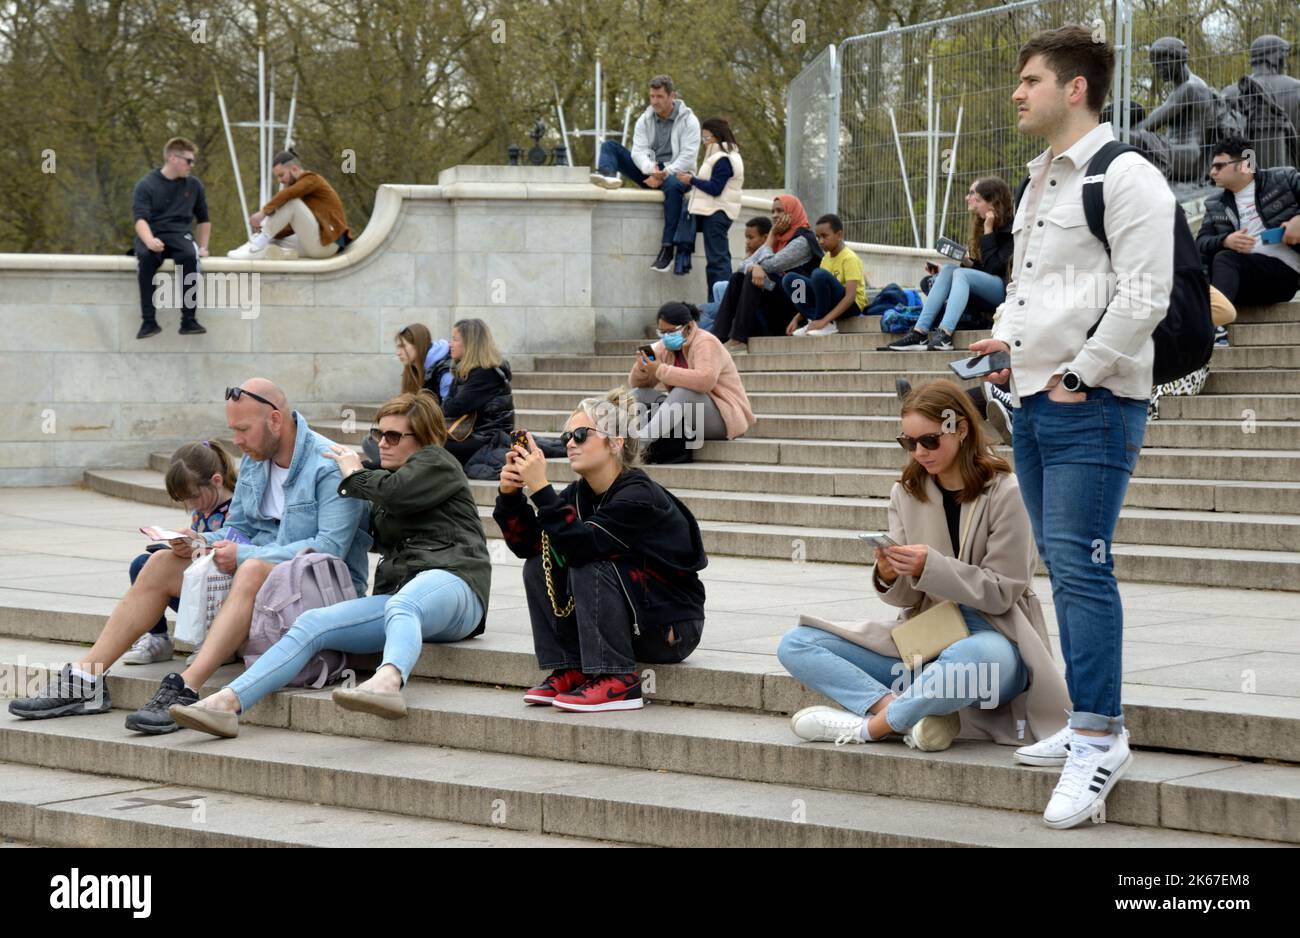 Tourists outside Buckingham Palace, London Stock Photo